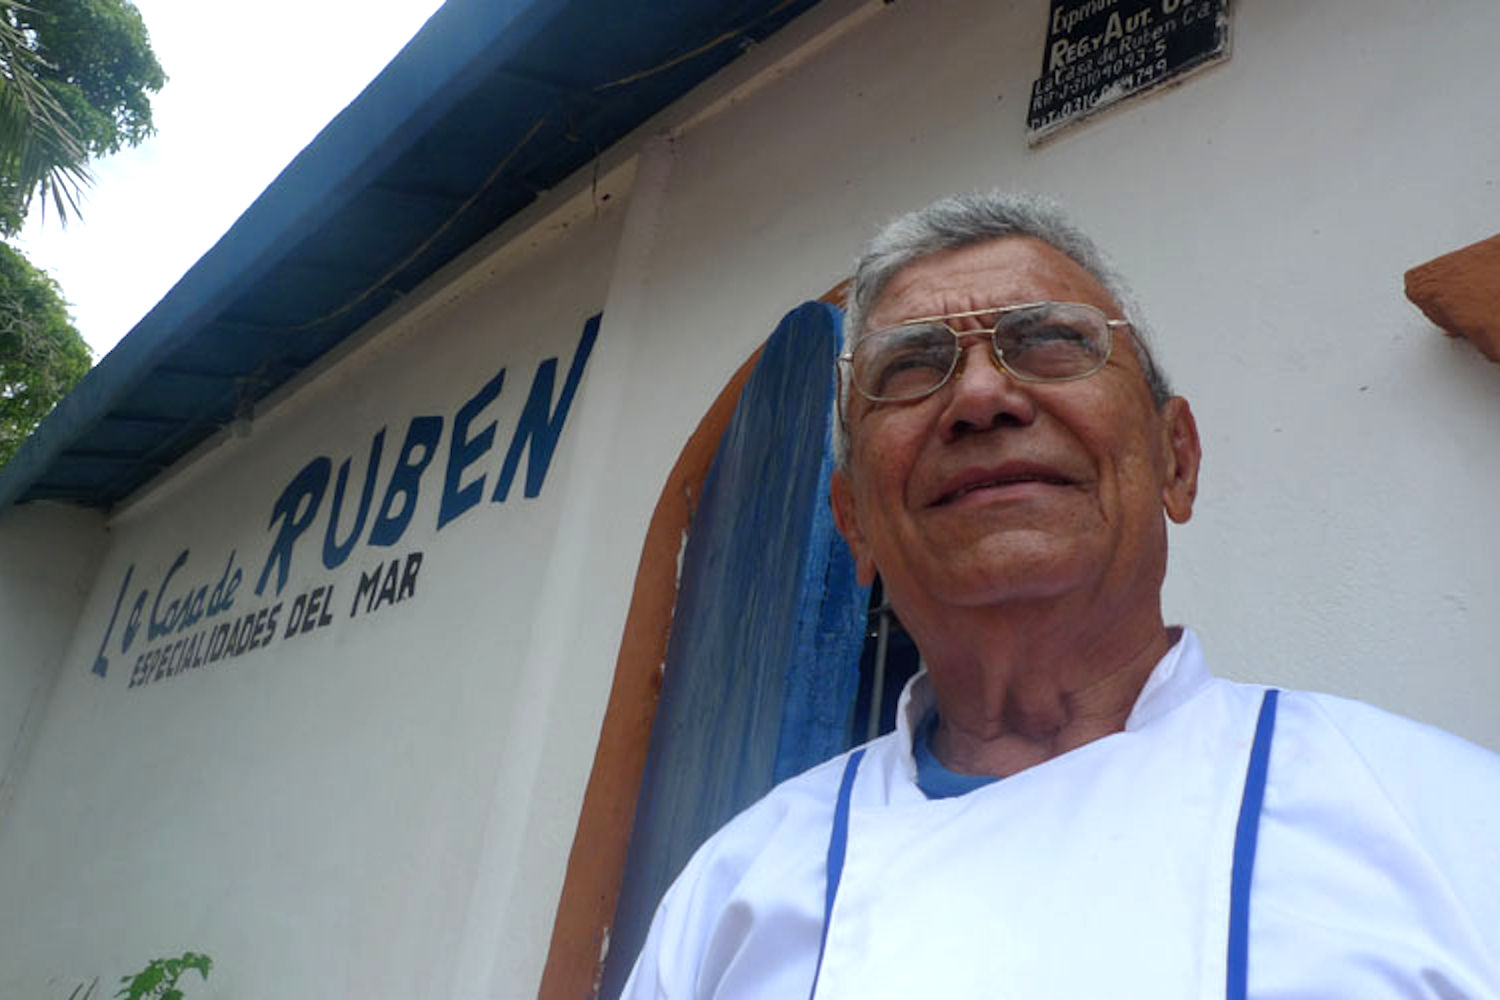 Rubén Santiago